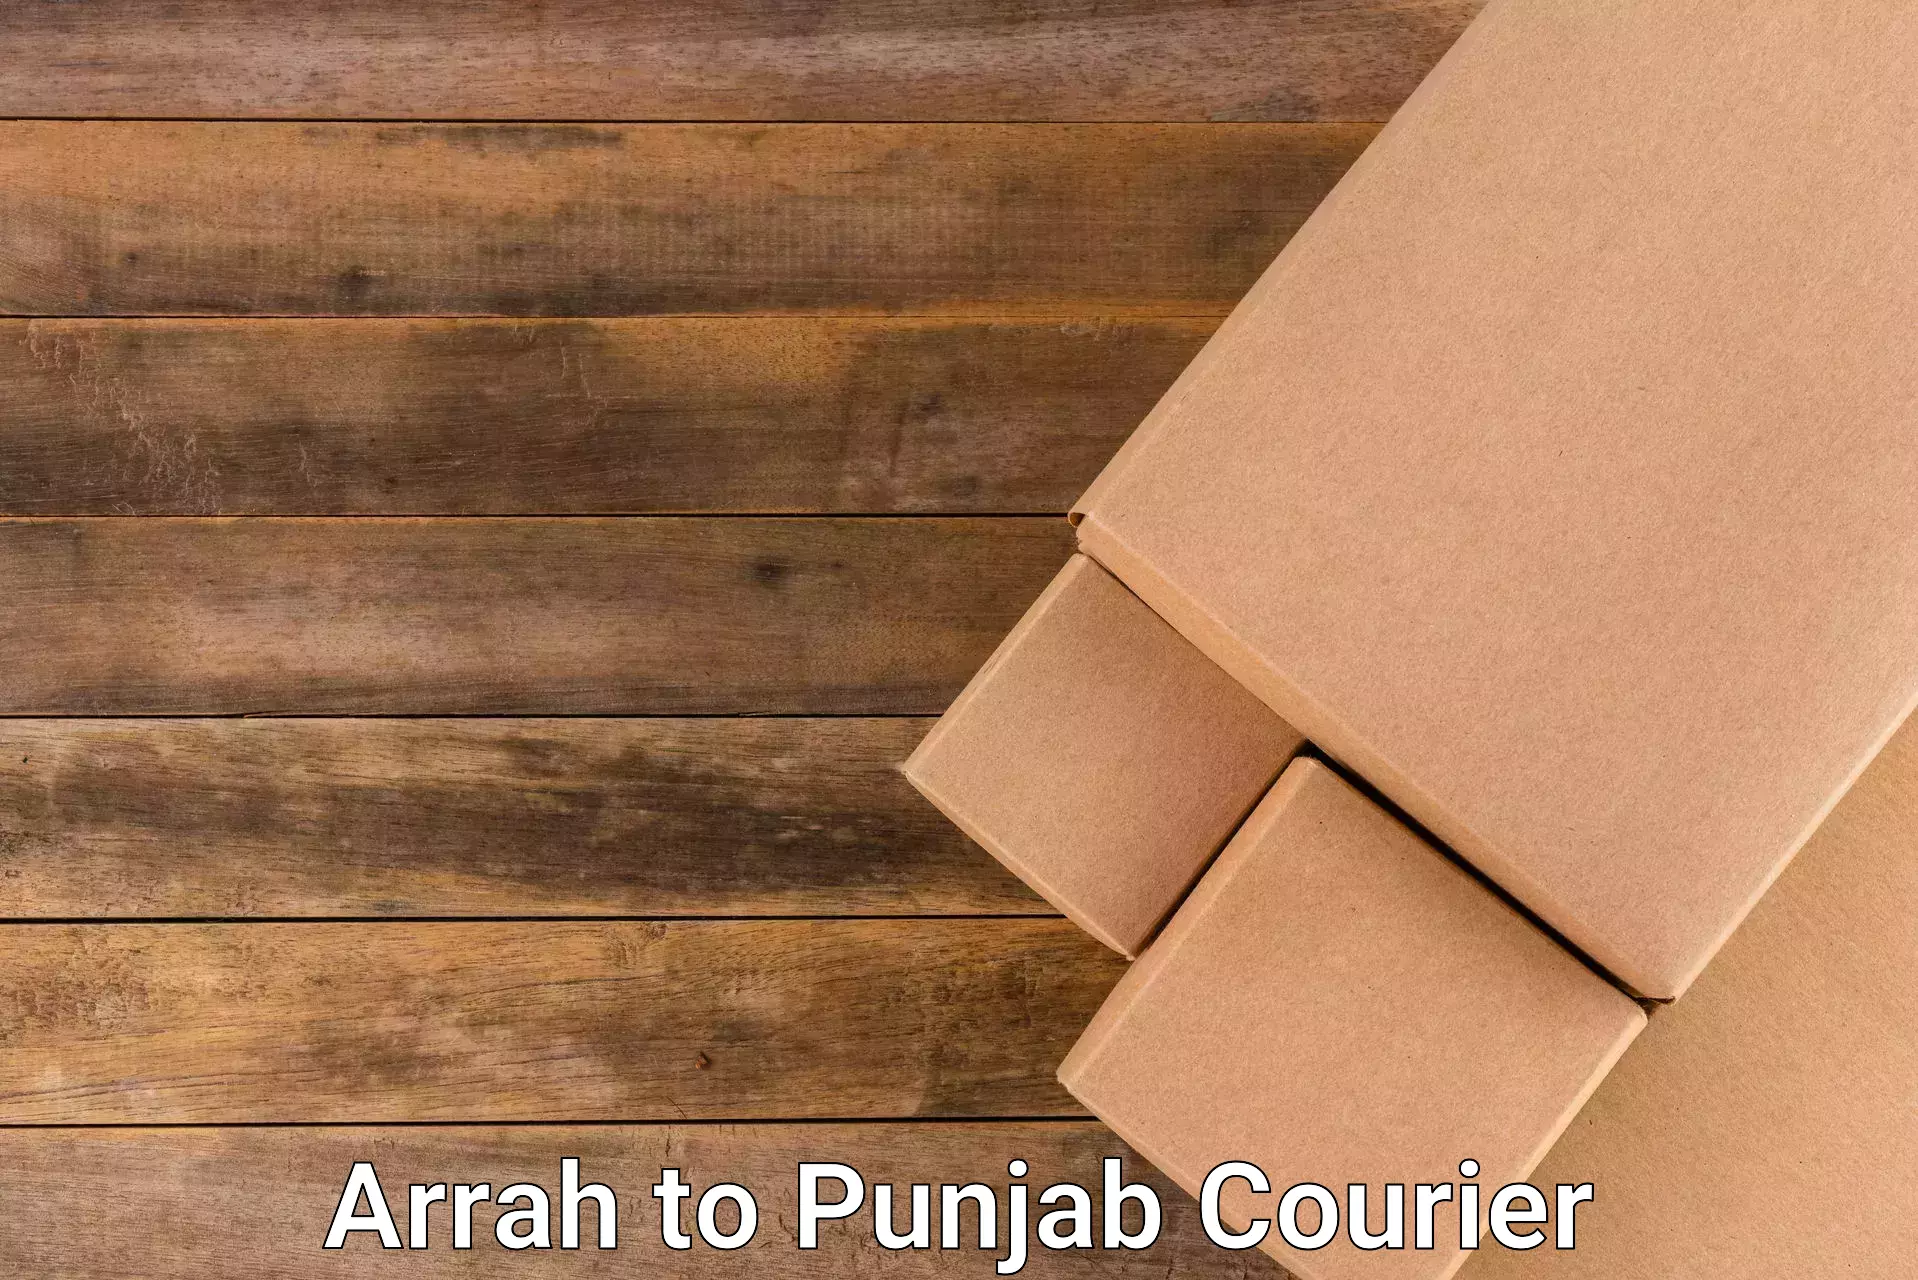 Efficient cargo services Arrah to Punjab